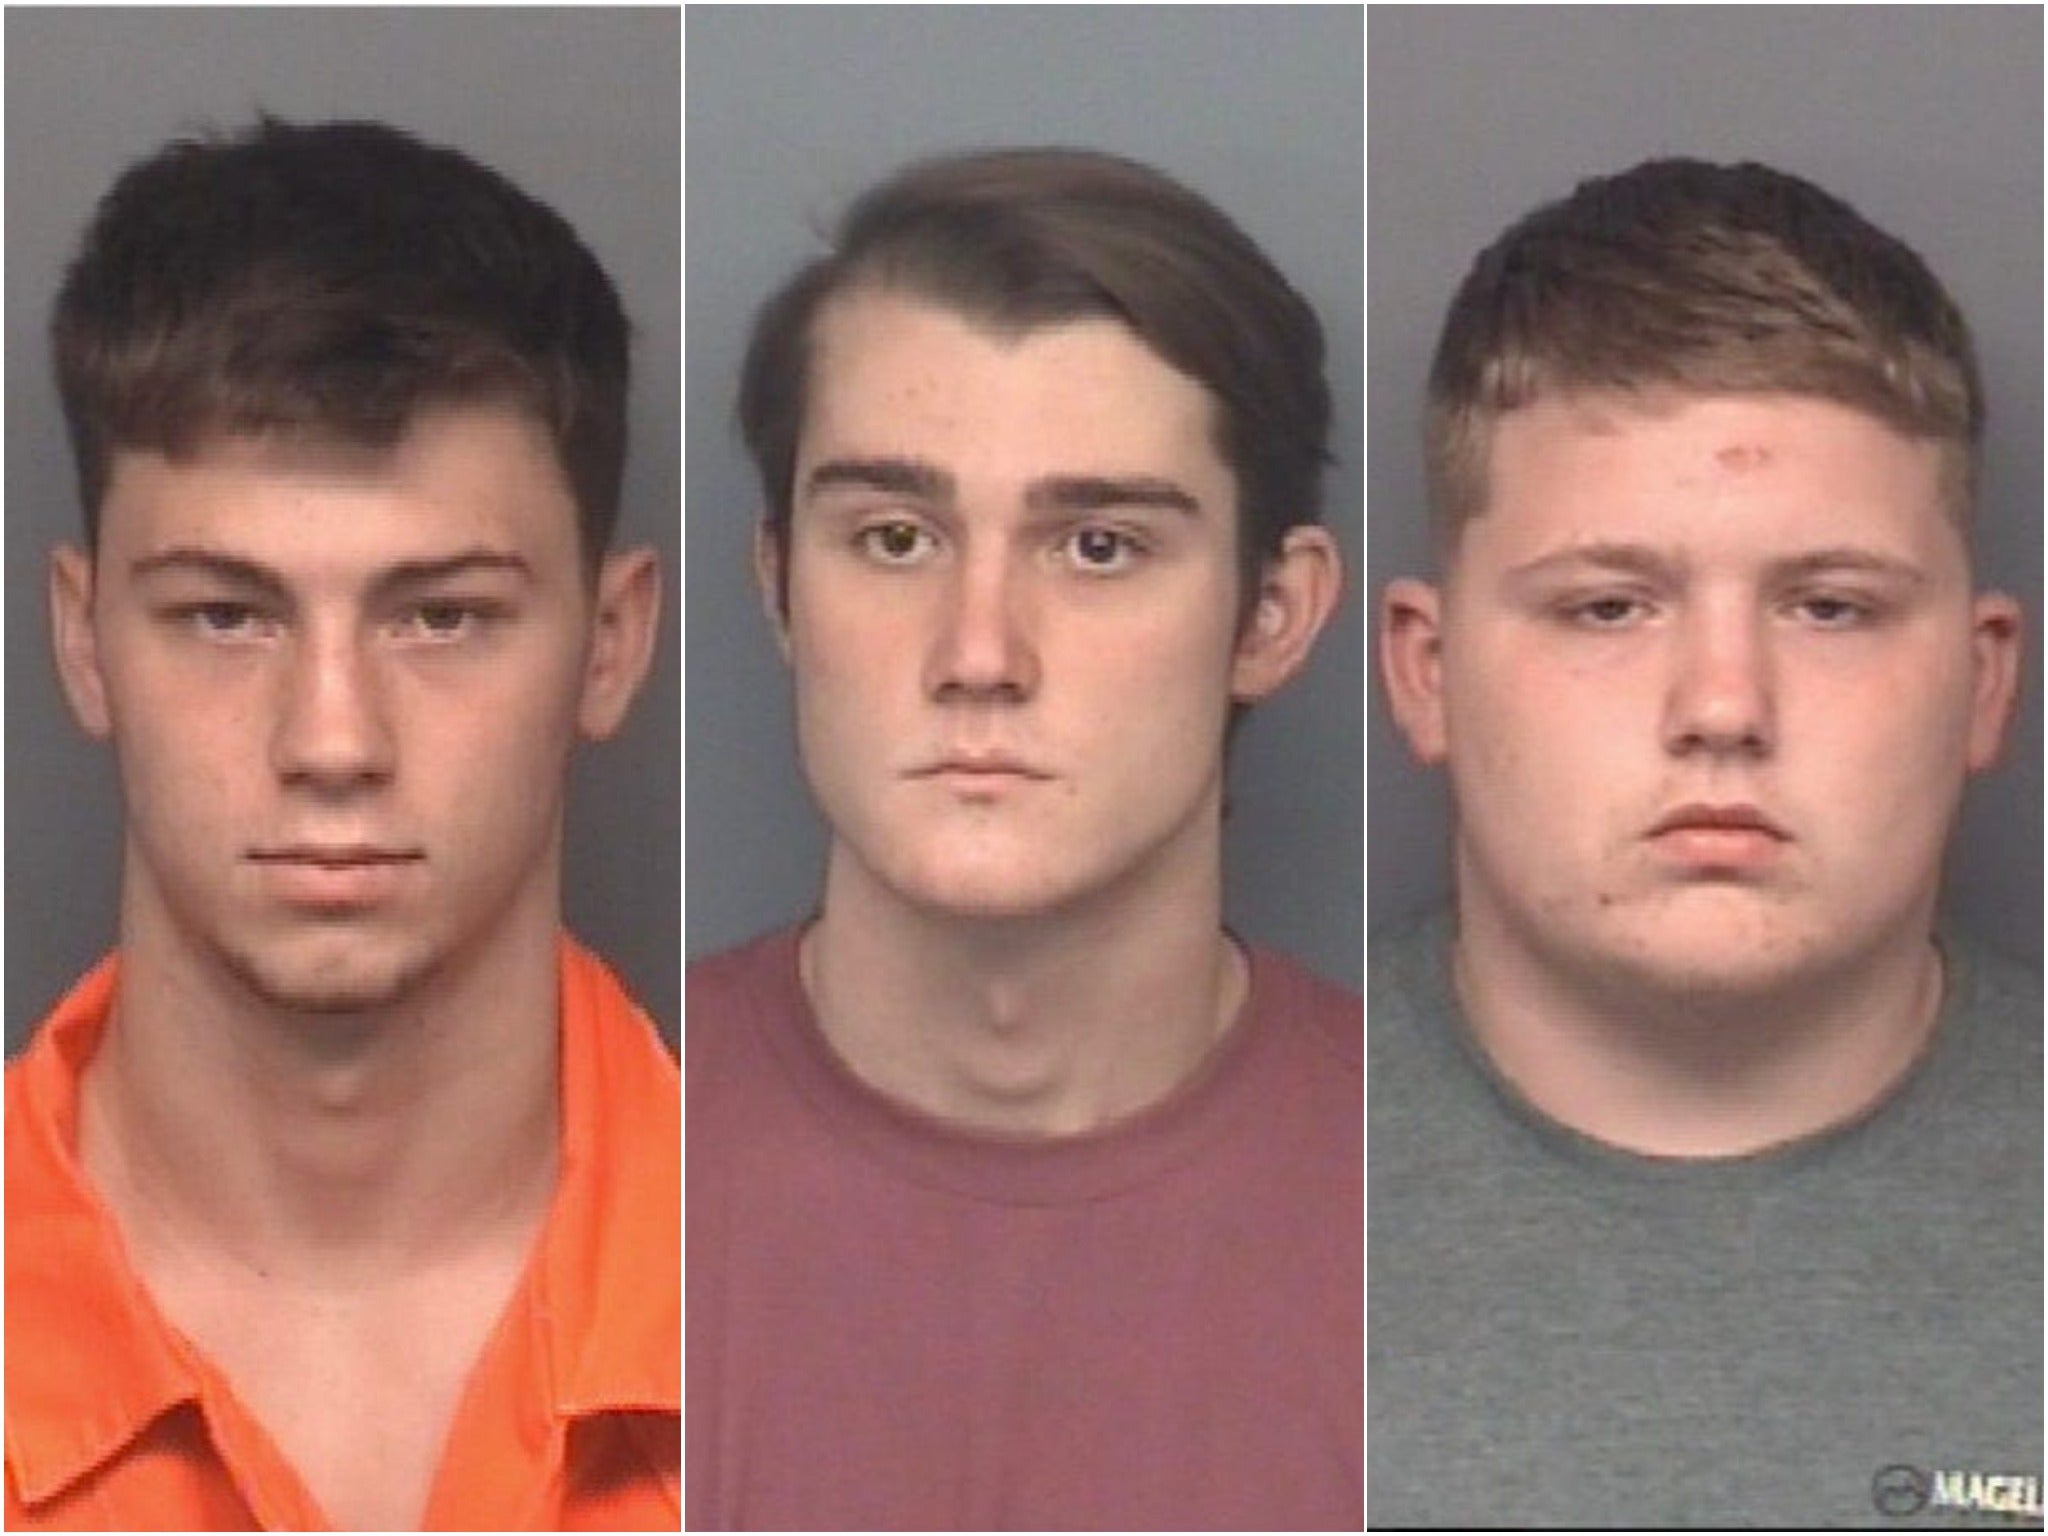 Reid Mitchell, 17, Ayden Holland, 17, y Logan Huber, 18, fueron arrestados después del ataque a Cole Hagan